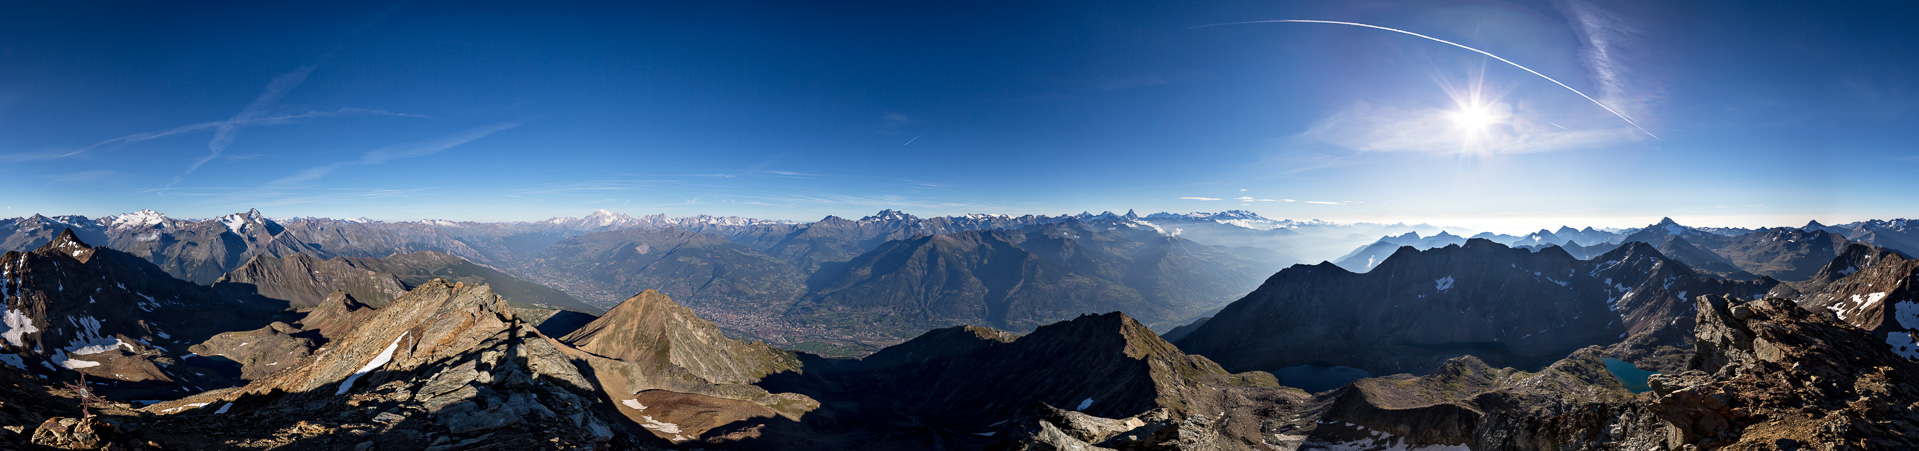 Gipfelpanorama: Tiefblicke ins 3 km tiefer gelegene Aosta-Tal und Fernblicke ins Wallis und in die Paradiso-Gruppe.